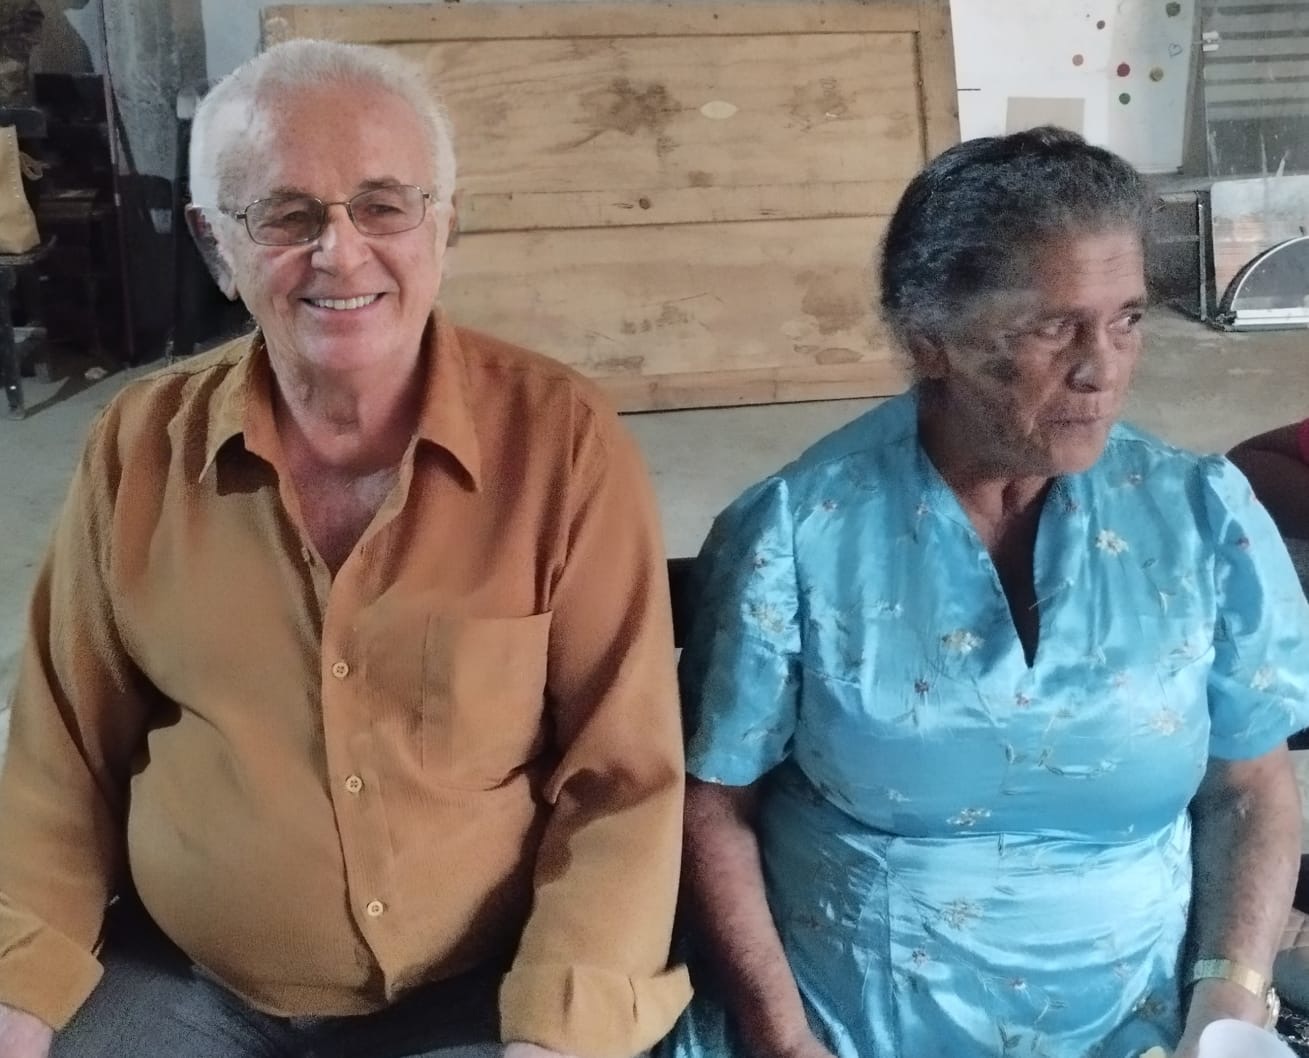 Casal completa hoje Bodas de Cereja, 59 anos de casados em Teófilo Otoni